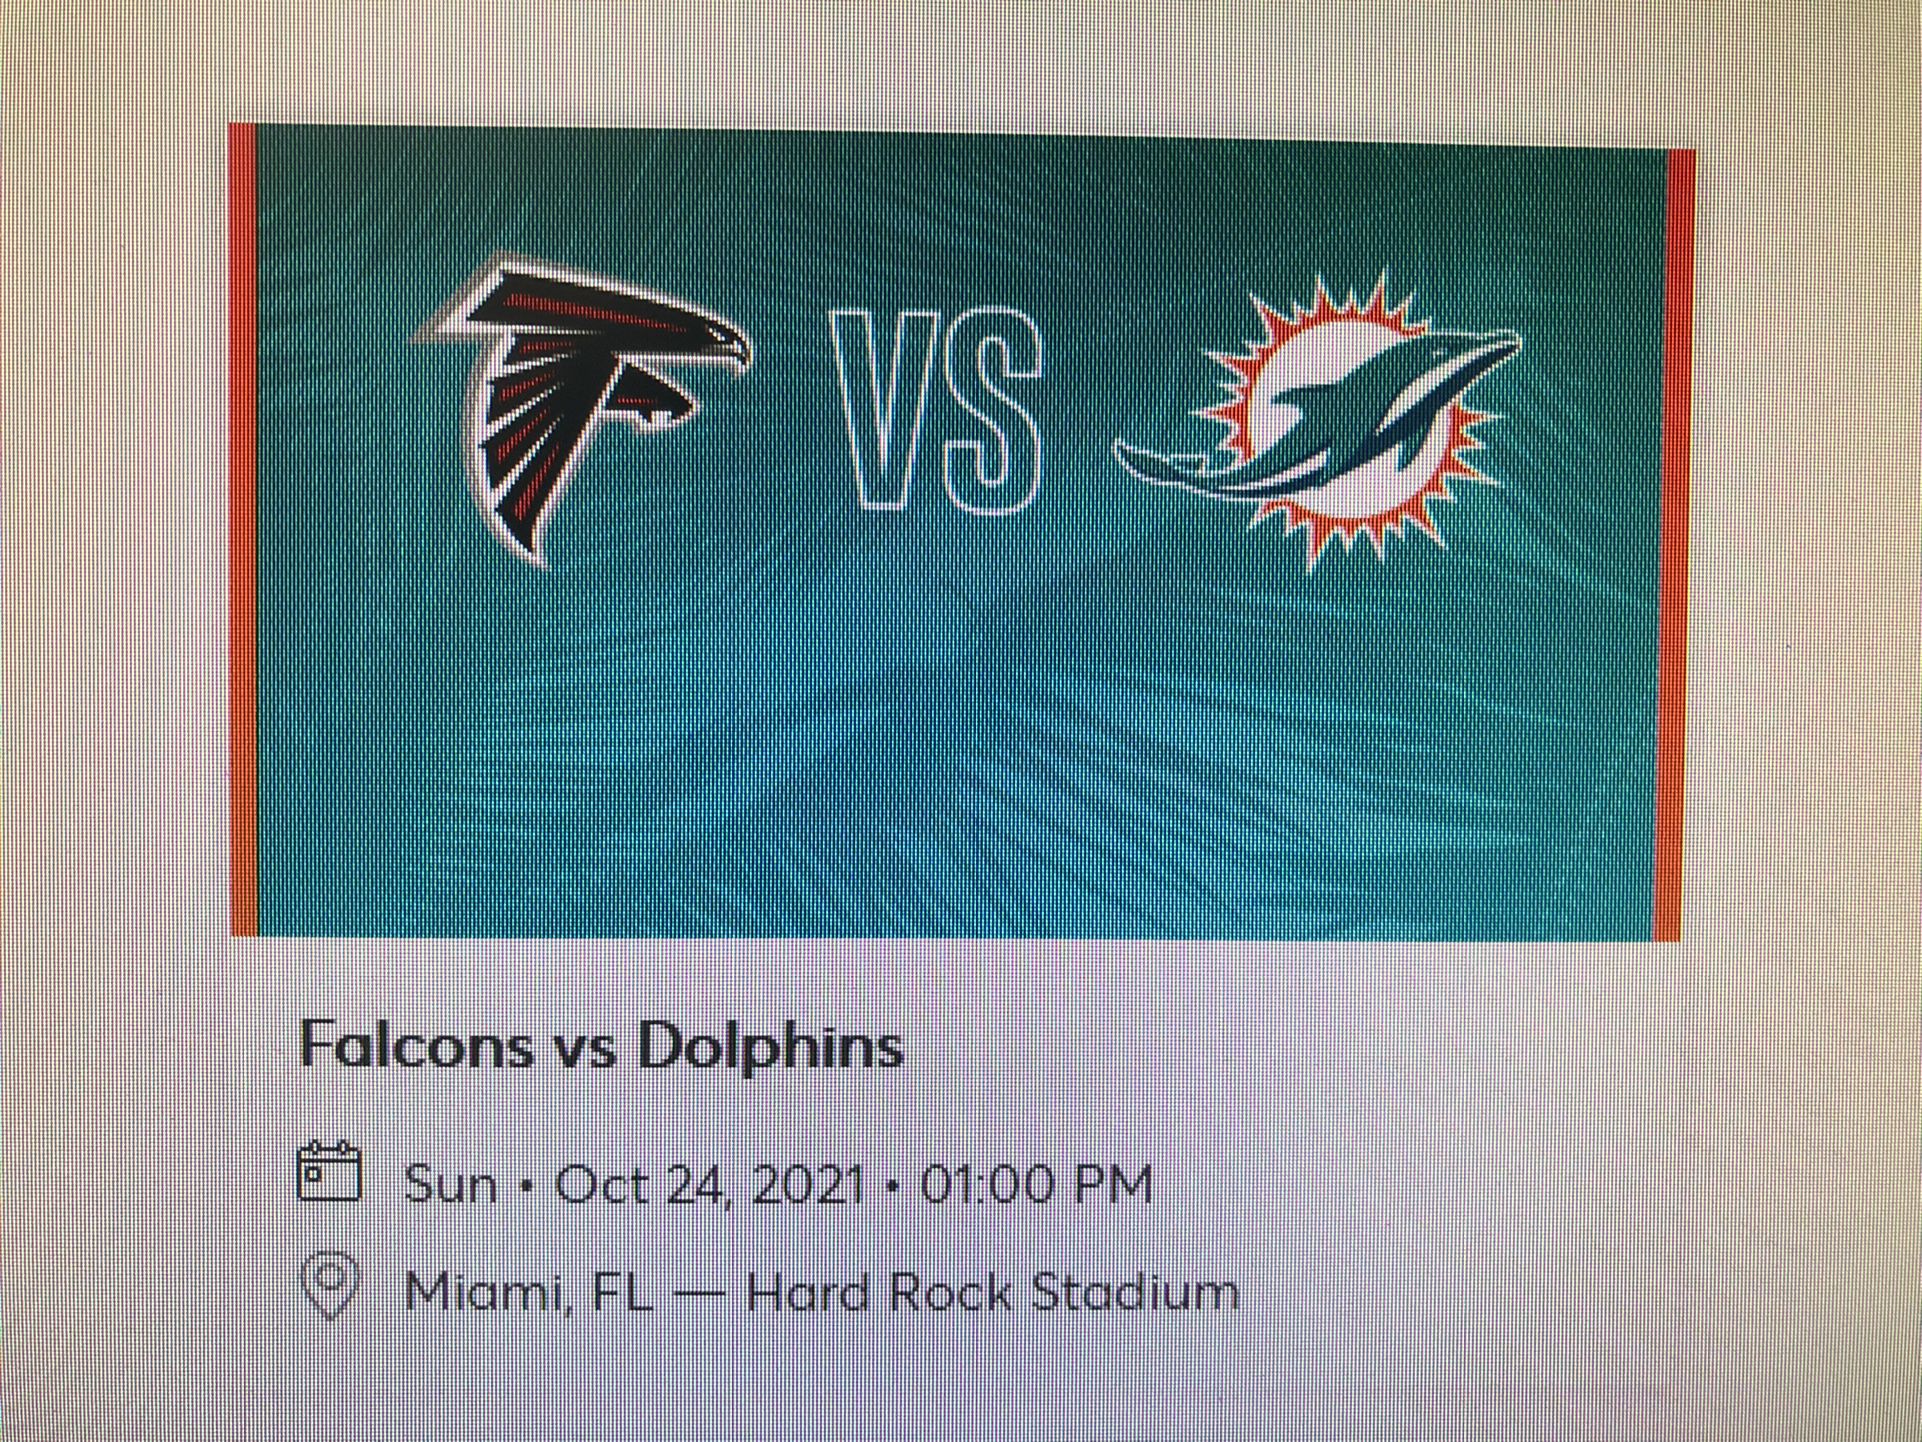 Miami Dolphins Vs Atlanta Falcons 